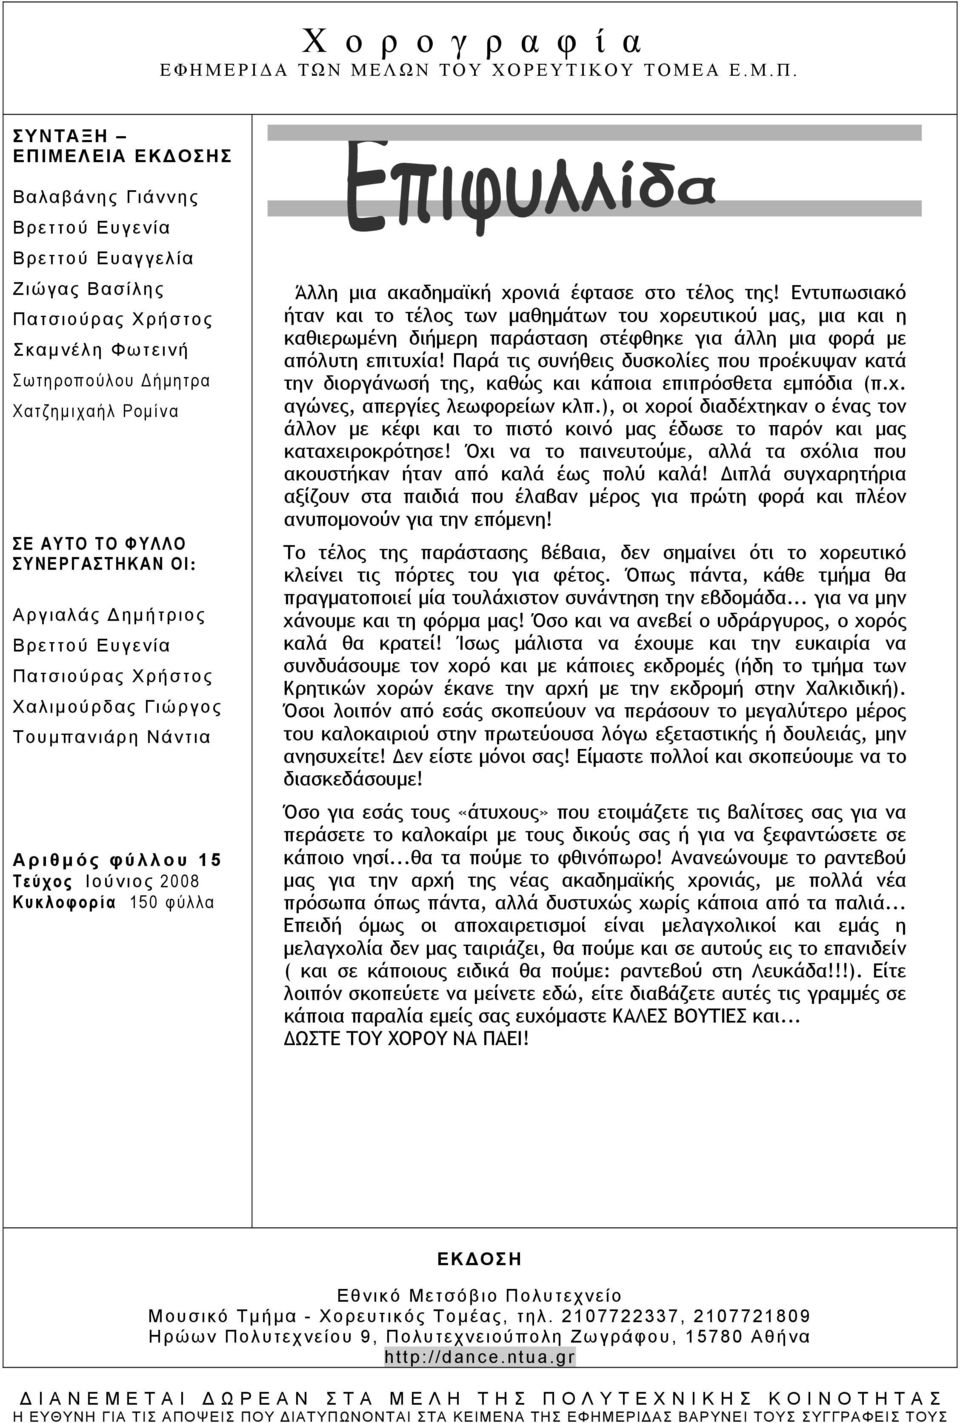 ΟΙ: Αργιαλάς Δημήτριος Βρεττού Ευγενία Πατσιούρας Χρήστος Χαλιμούρδας Γιώργος Toυμπανιάρη Νάντια Αριθμός φύλλου 15 Τεύχος Iούνιος 2008 Κυκλοφορία 150 φύλλα Άλλη μια ακαδημαϊκή χρονιά έφτασε στο τέλος